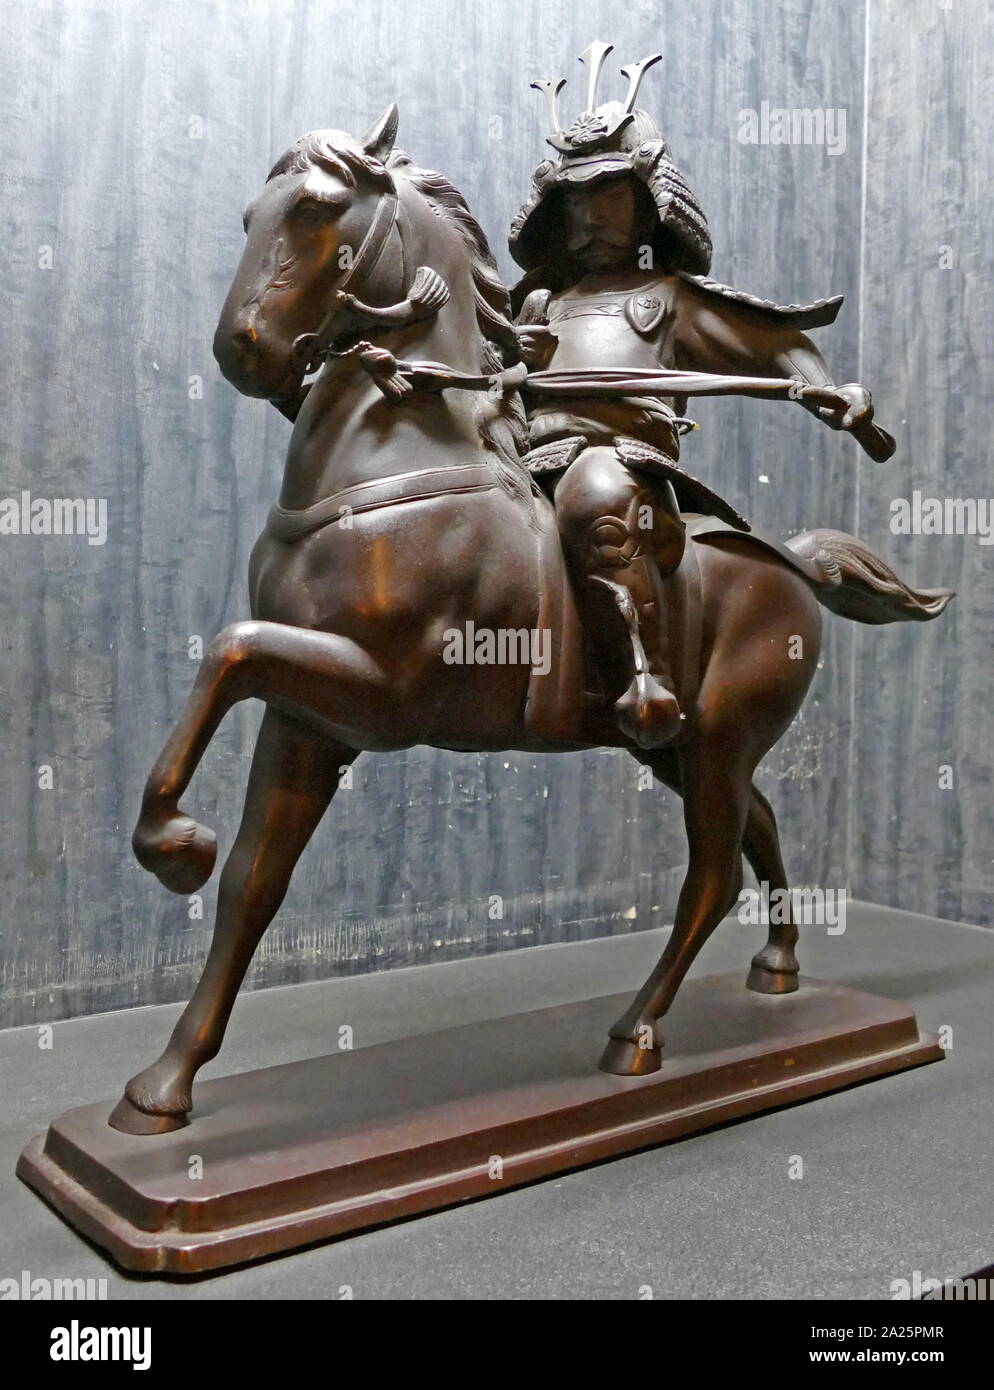 Statuette of a 17th century Samurai warrior. Stock Photo